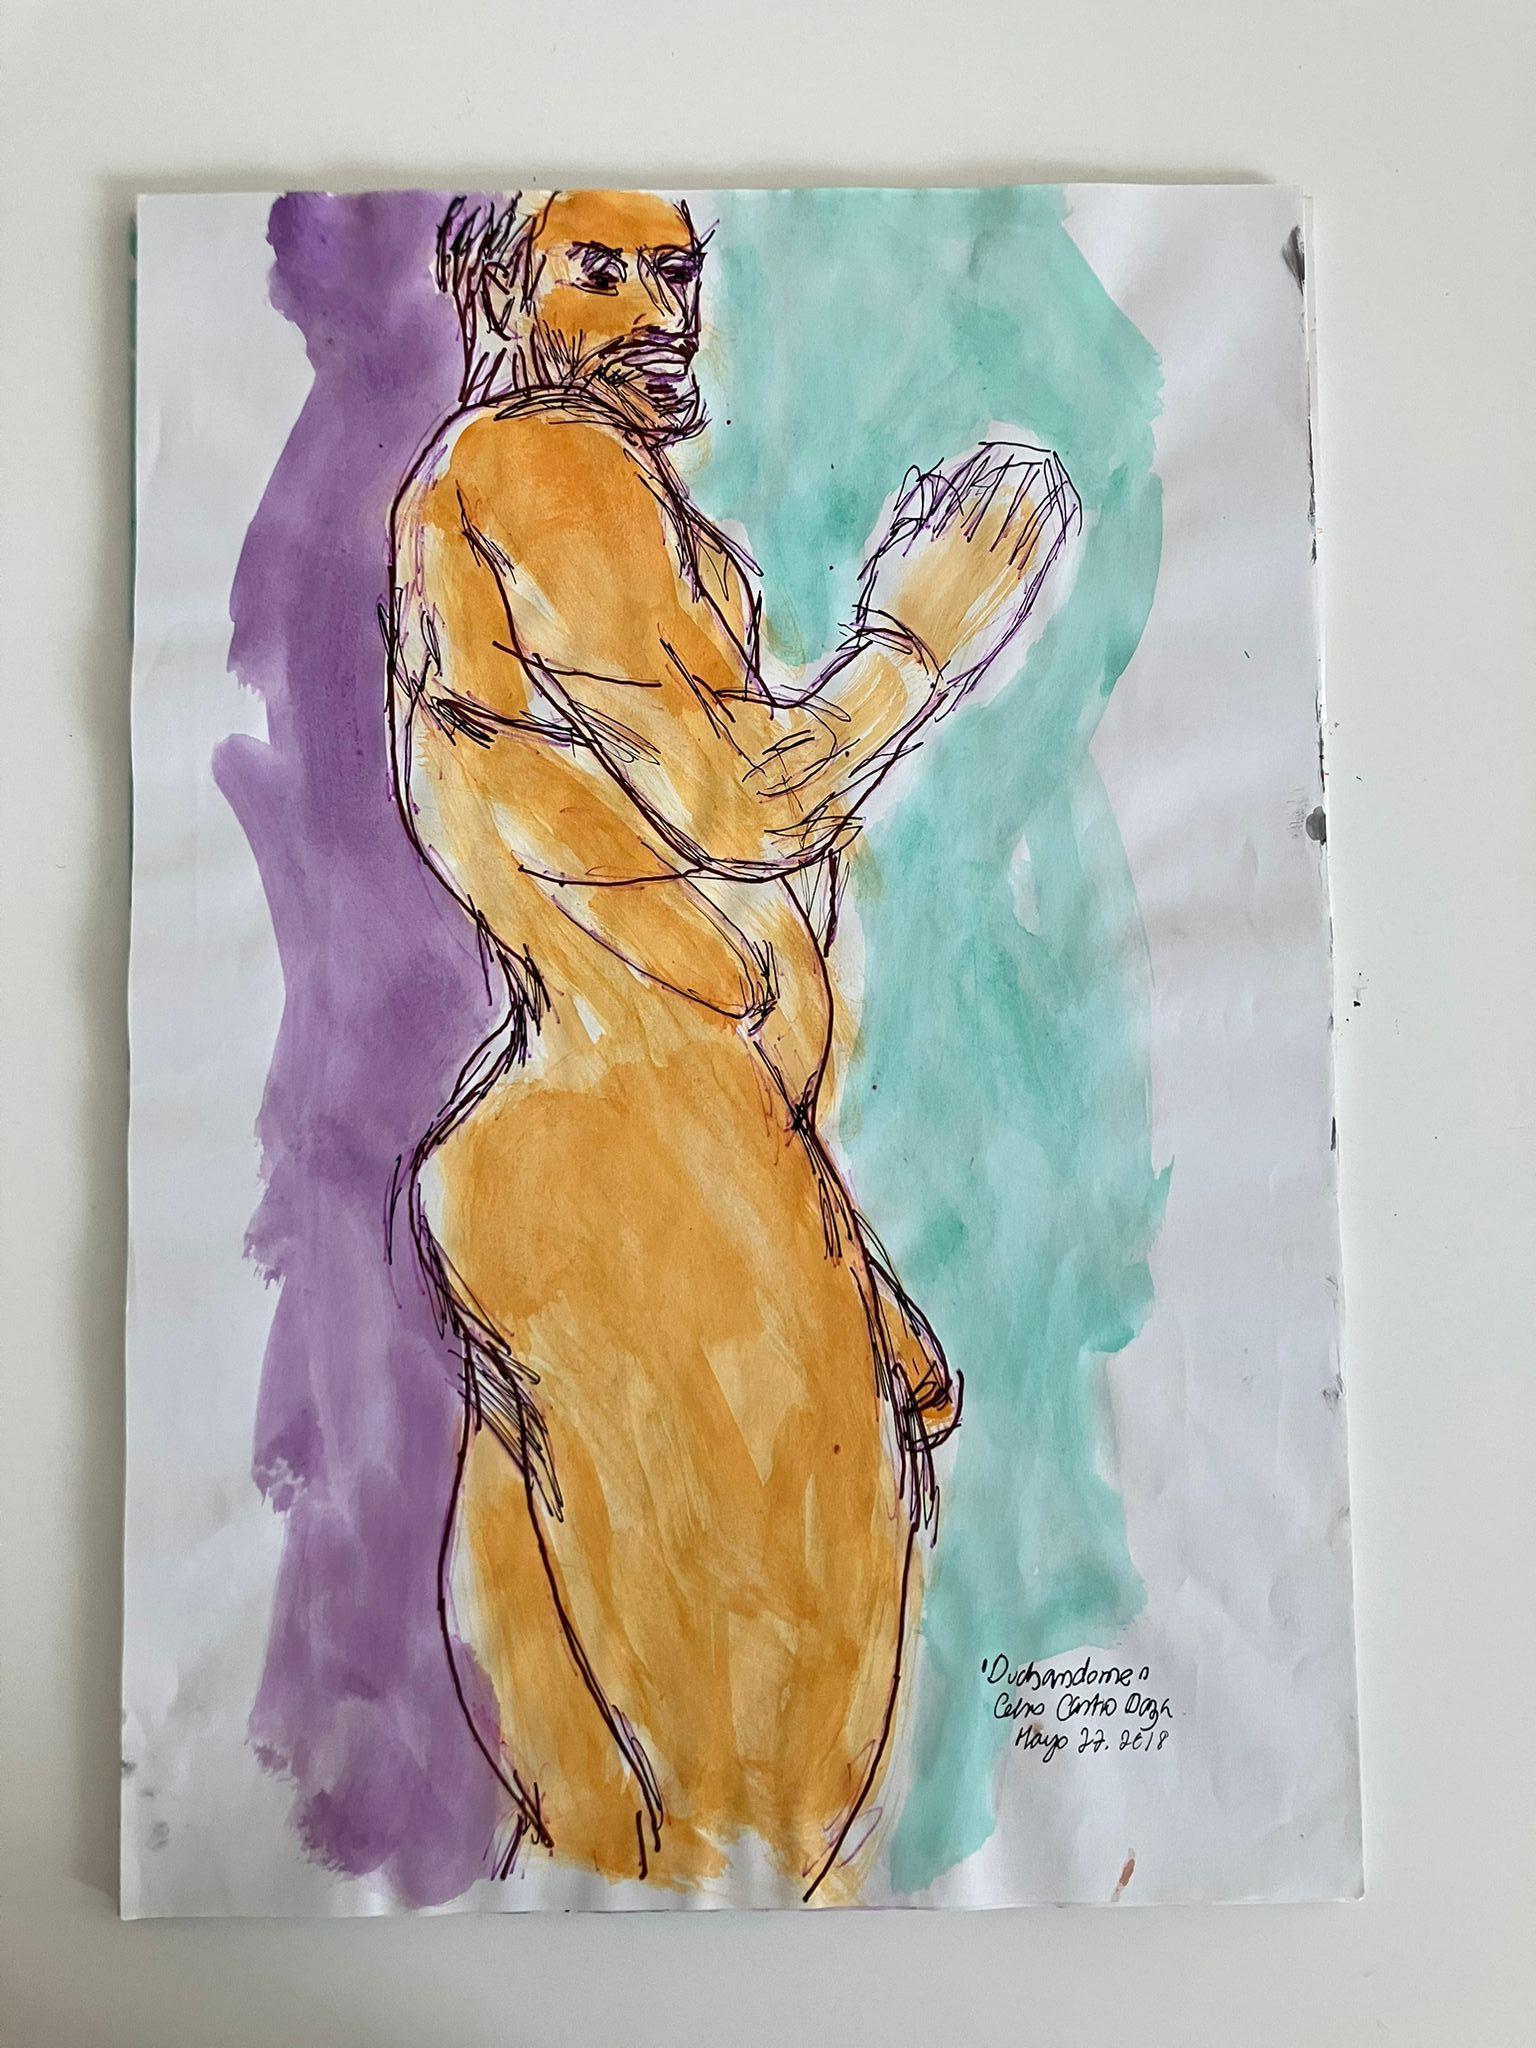 Aus der Reihe Duchándome Nude, Serie. Set von 12 Aquarell- und Tinte-Aquarelle auf Archivpapier (Zeitgenössisch), Art, von Celso José Castro Daza